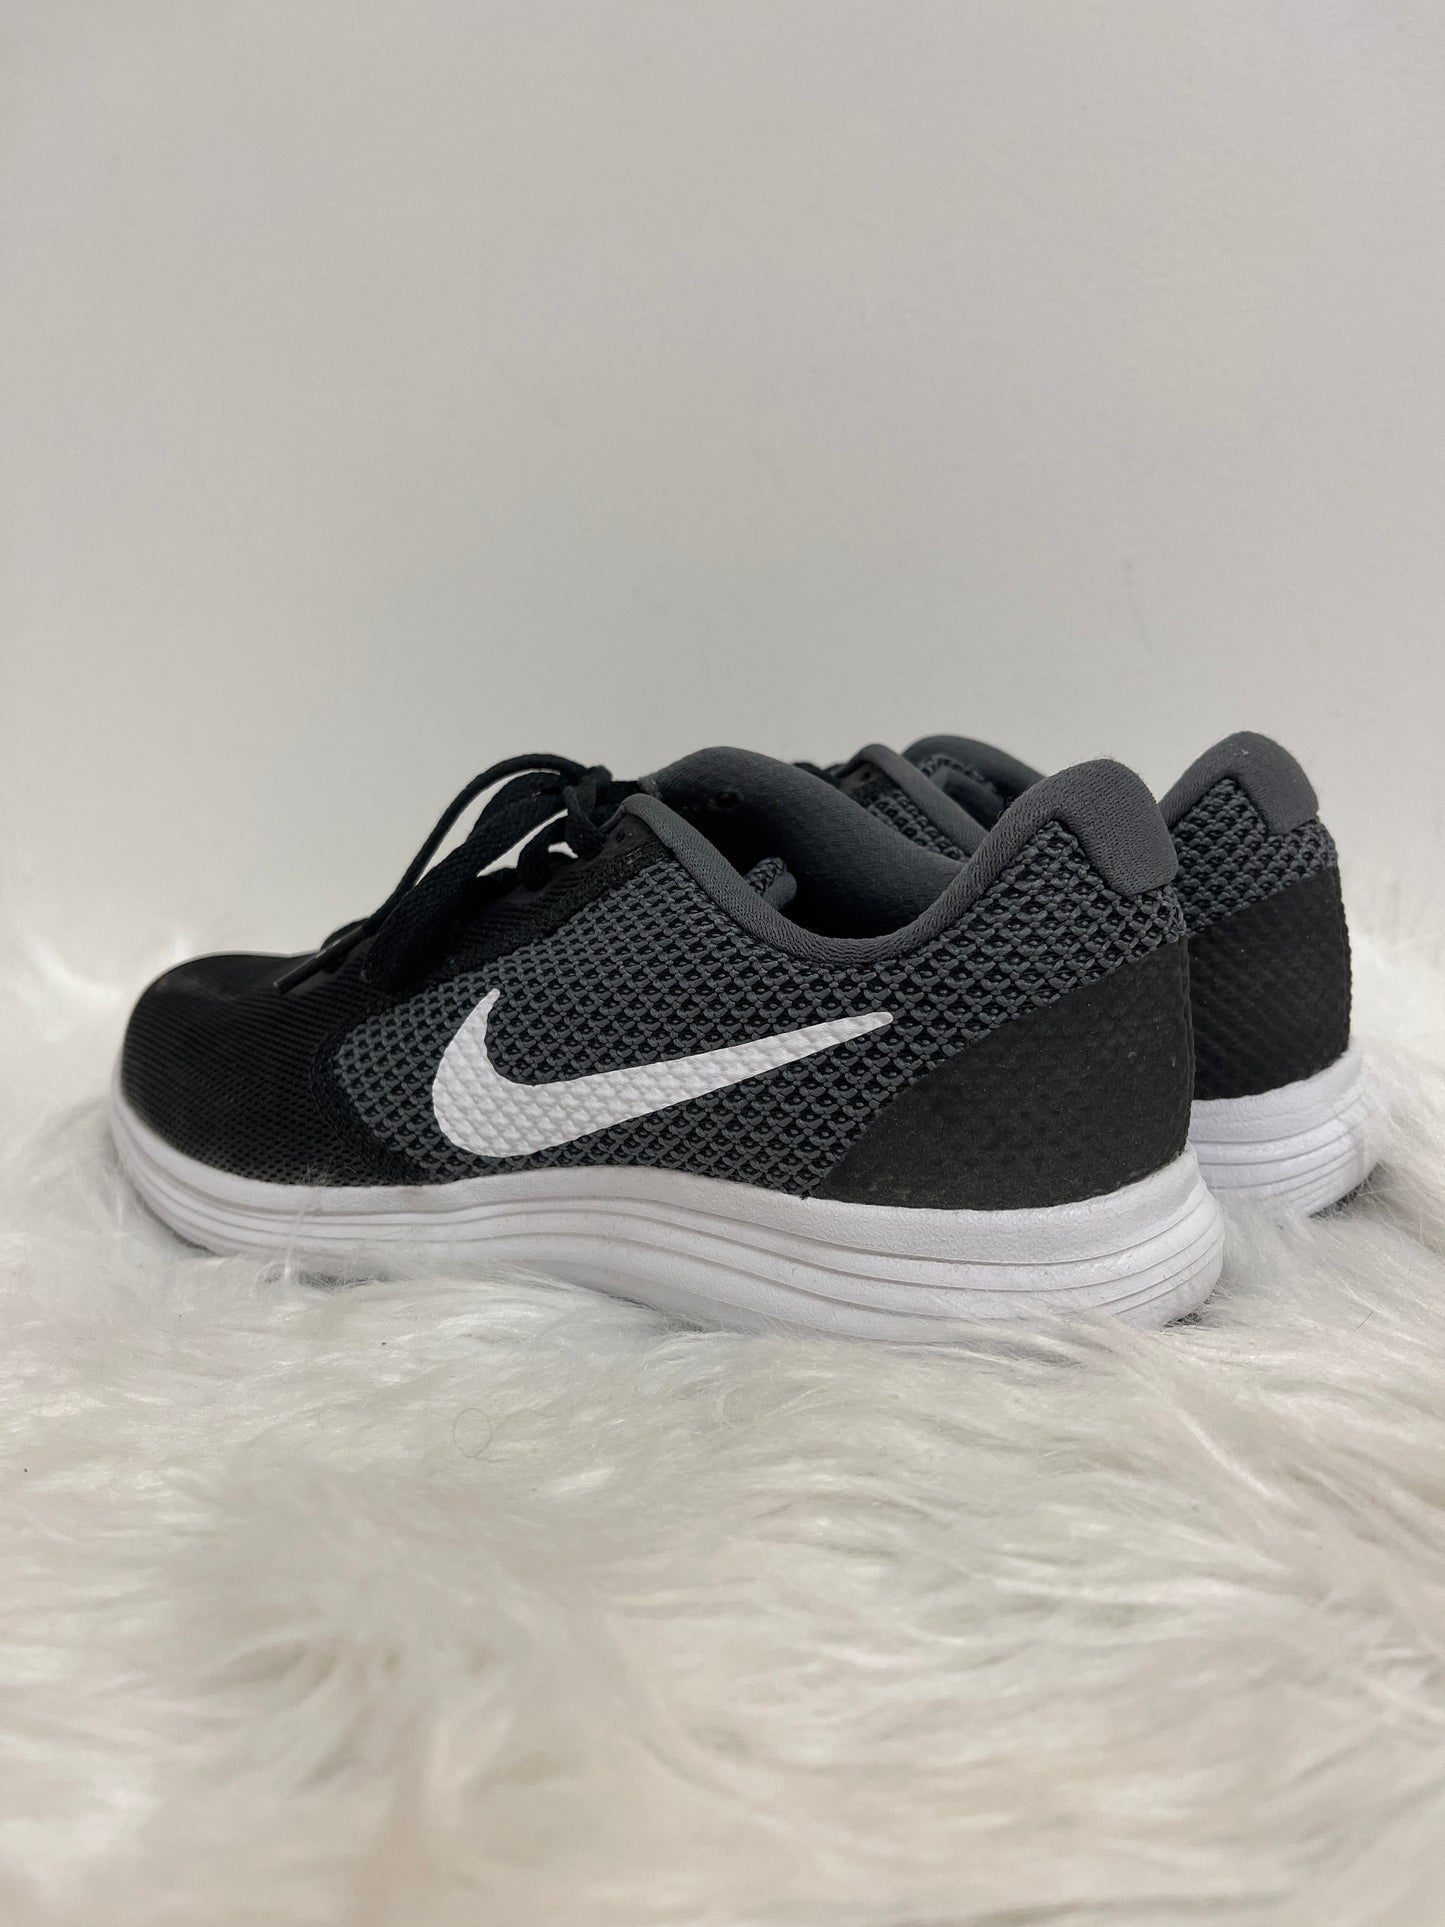 Black Shoes Athletic Nike, Size 7